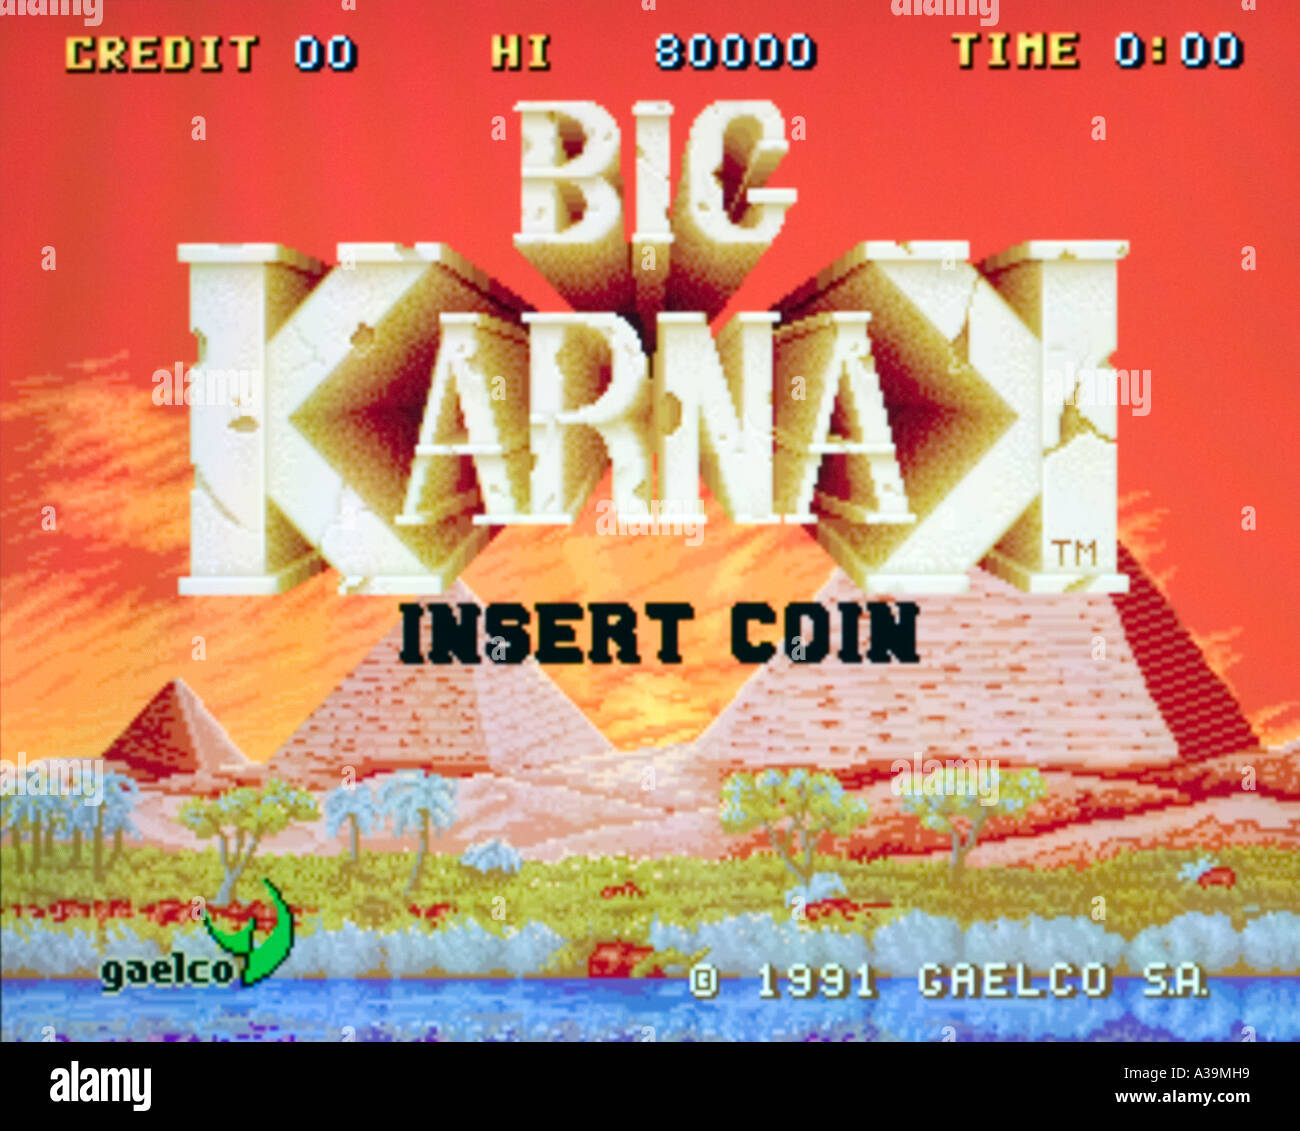 Big Karnak Gaelco SA 1991 vintage arcade videogame screenshot - EDITORIAL USE ONLY Stock Photo